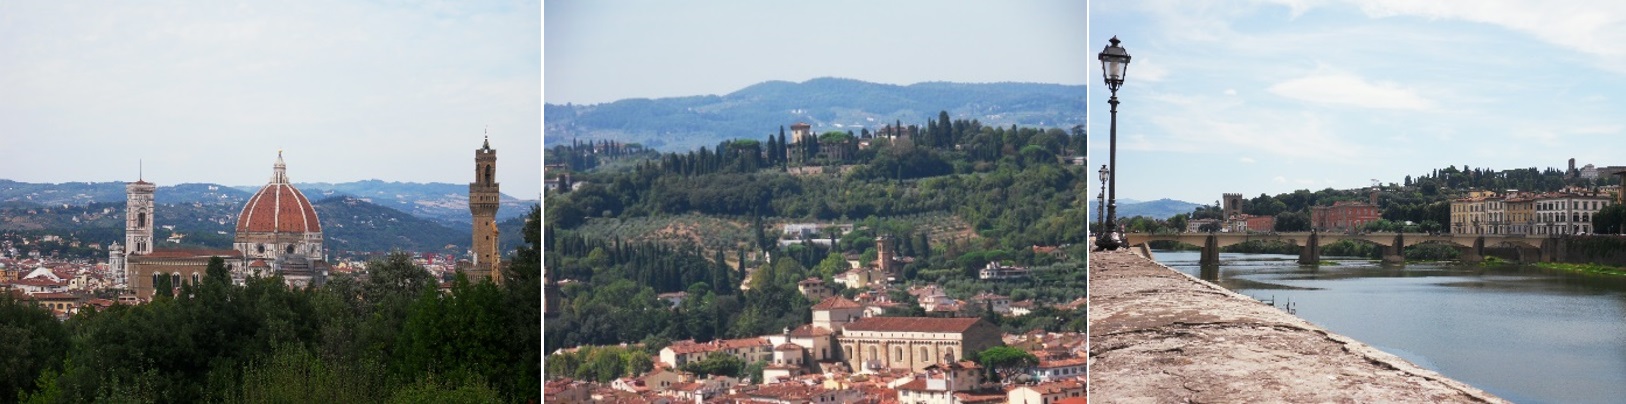 Florenz – Dom; Stadt, Land, Fluss (Arno)